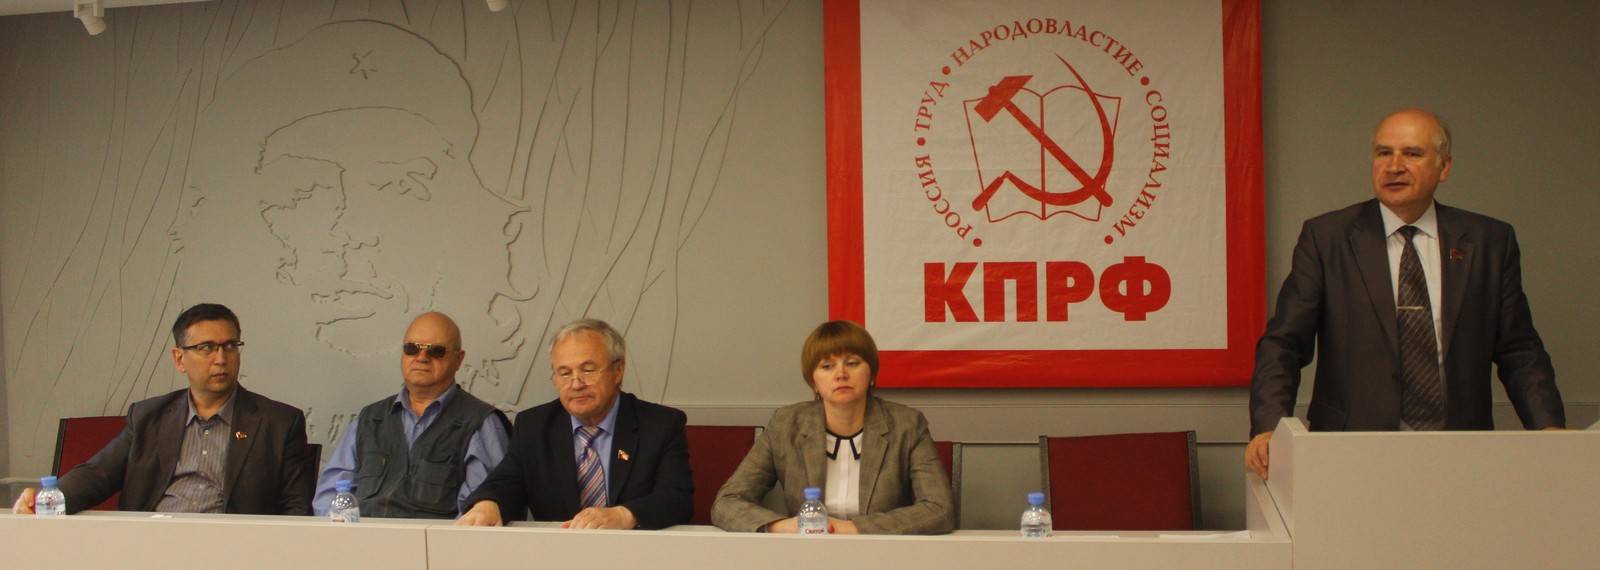 М.К.Парамонов выступает перед делегатами